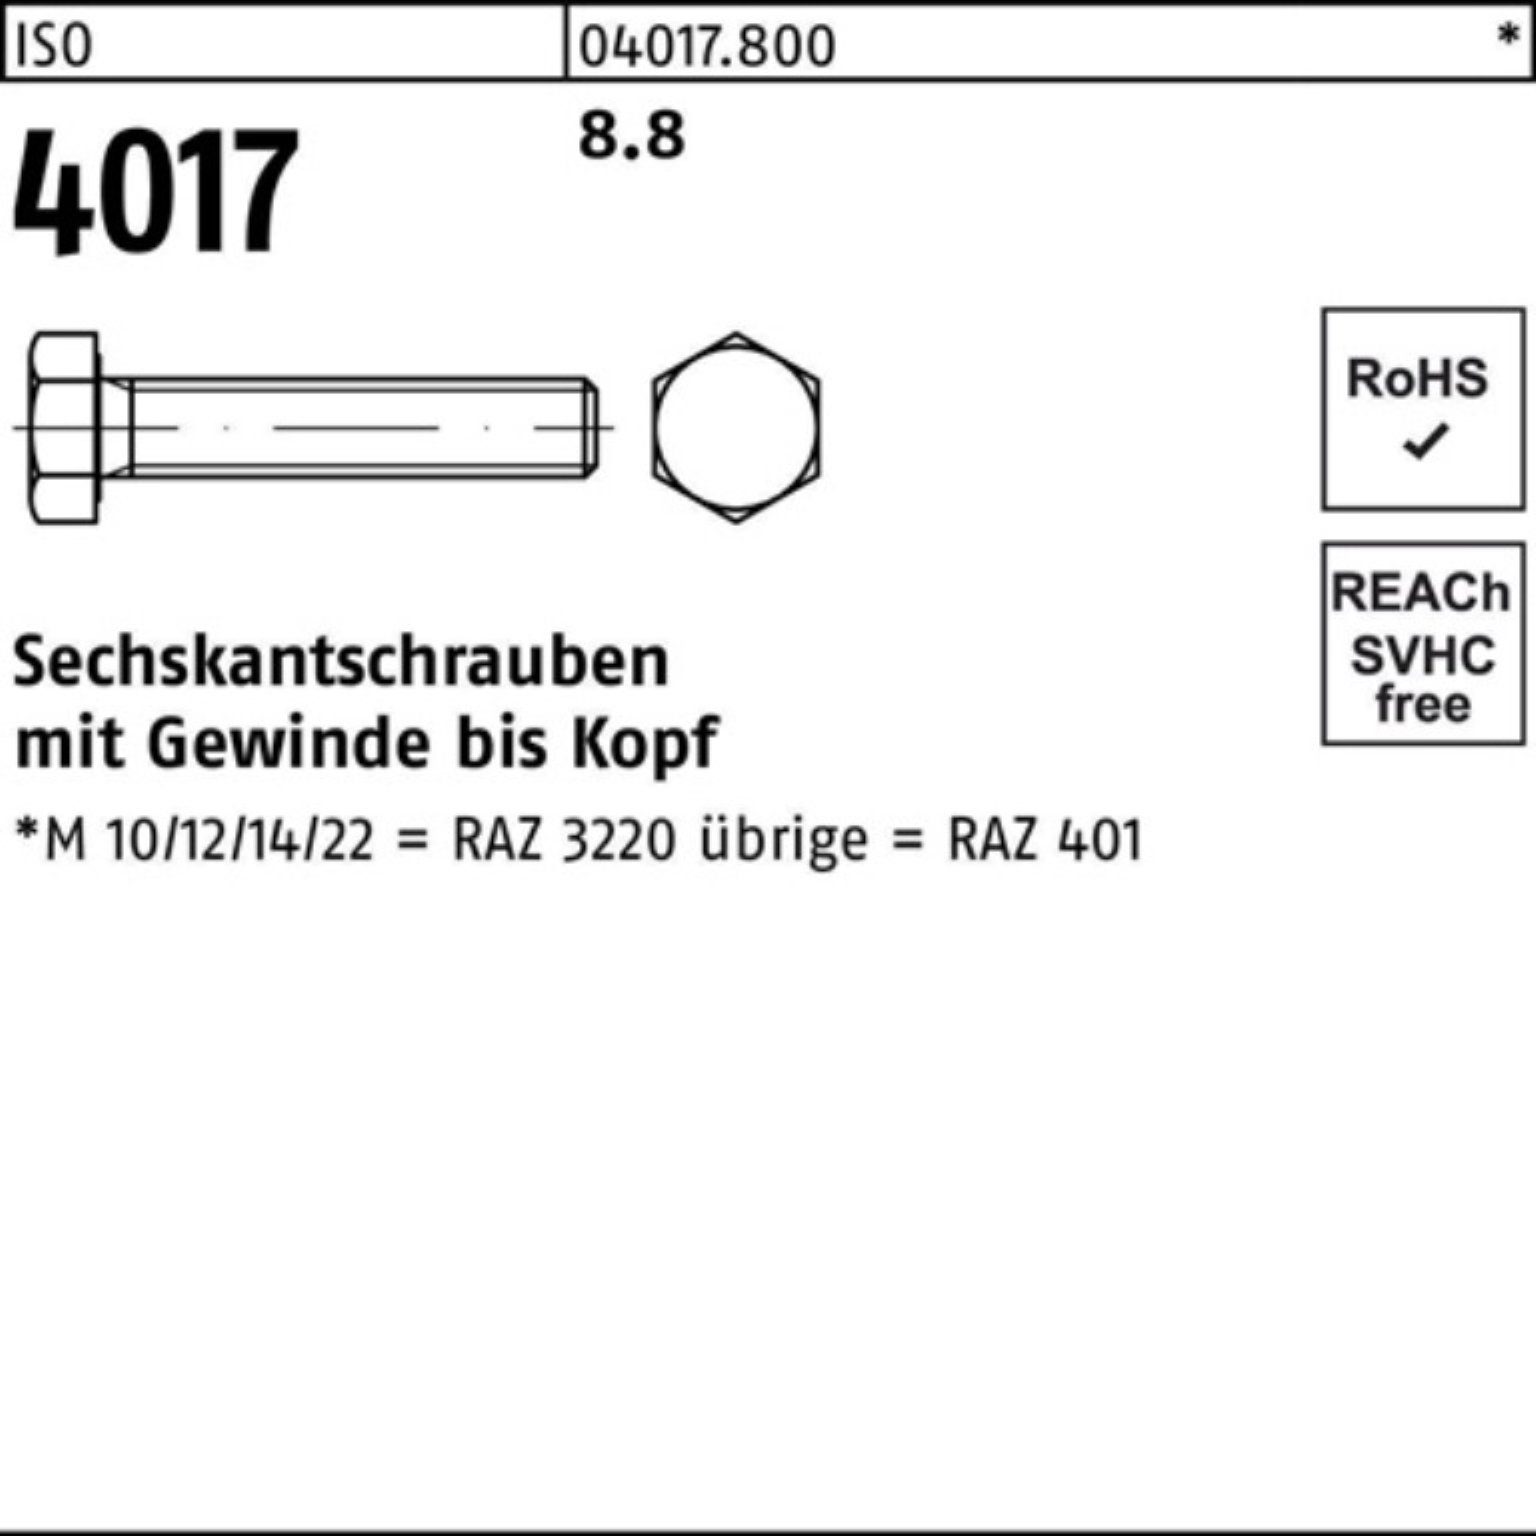 Stück Sechskantschraube VG Sechskantschraube 100 Pack 4017 8.8 ISO 100er 1 Bufab 401 M36x ISO